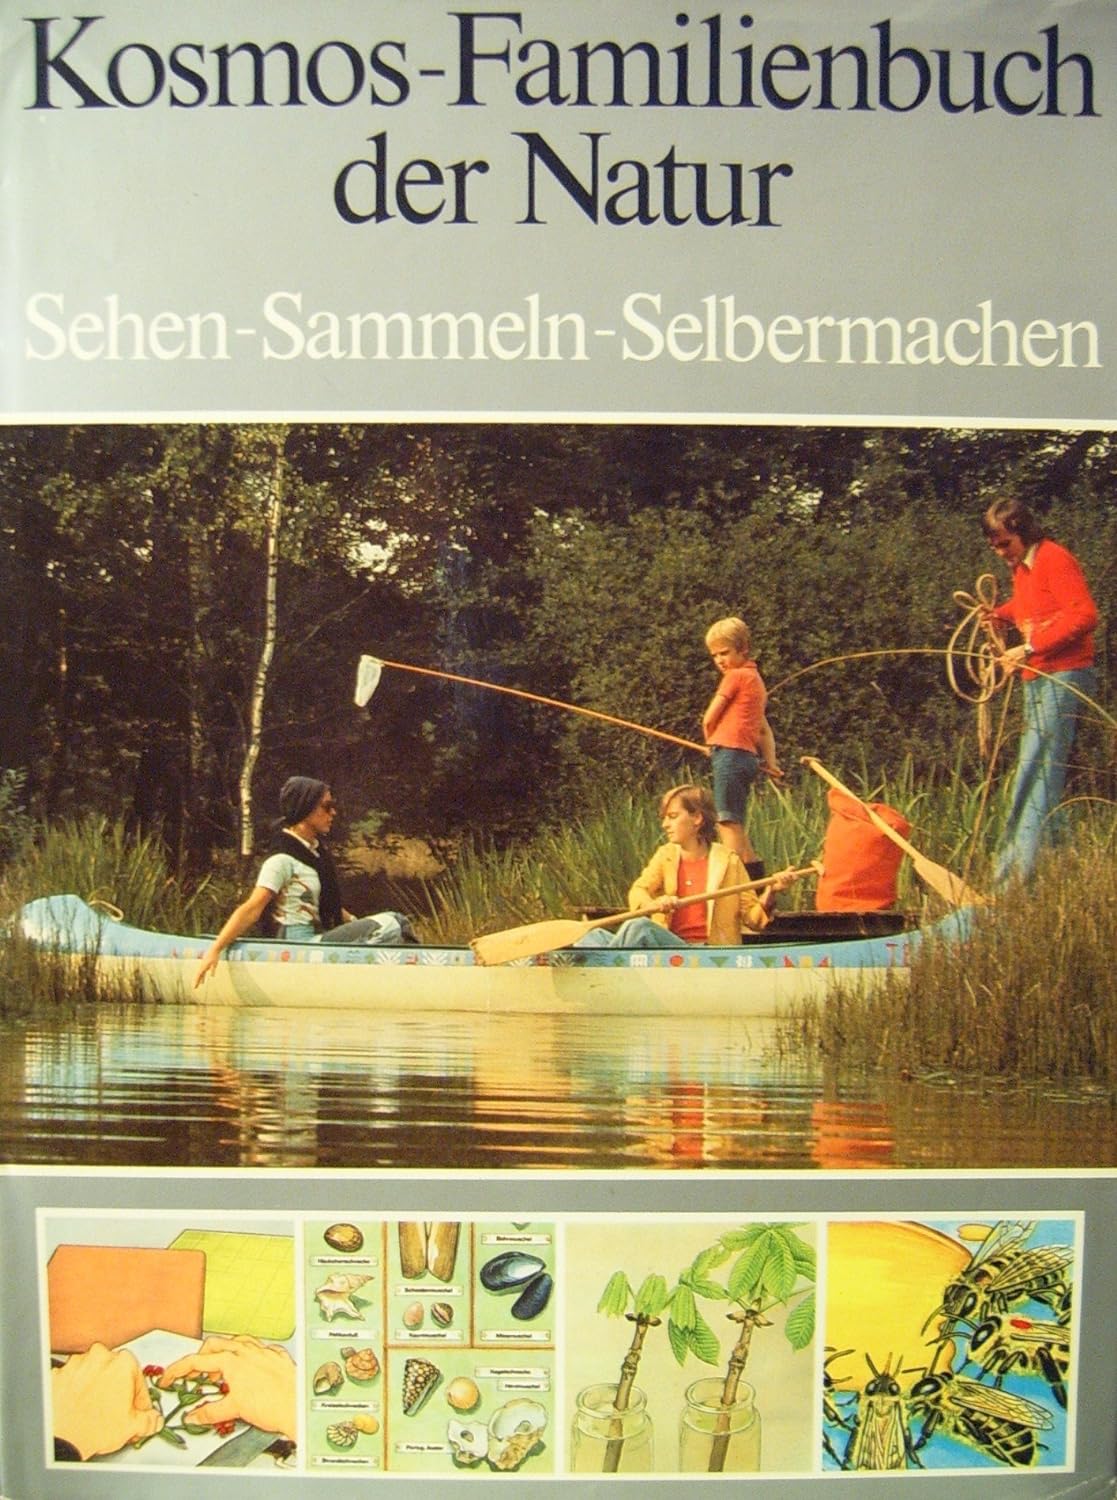 Kosmos-Familienbuch der Natur (Hardcover, German language, 1978, Franckh`sche Verlagshandlung)